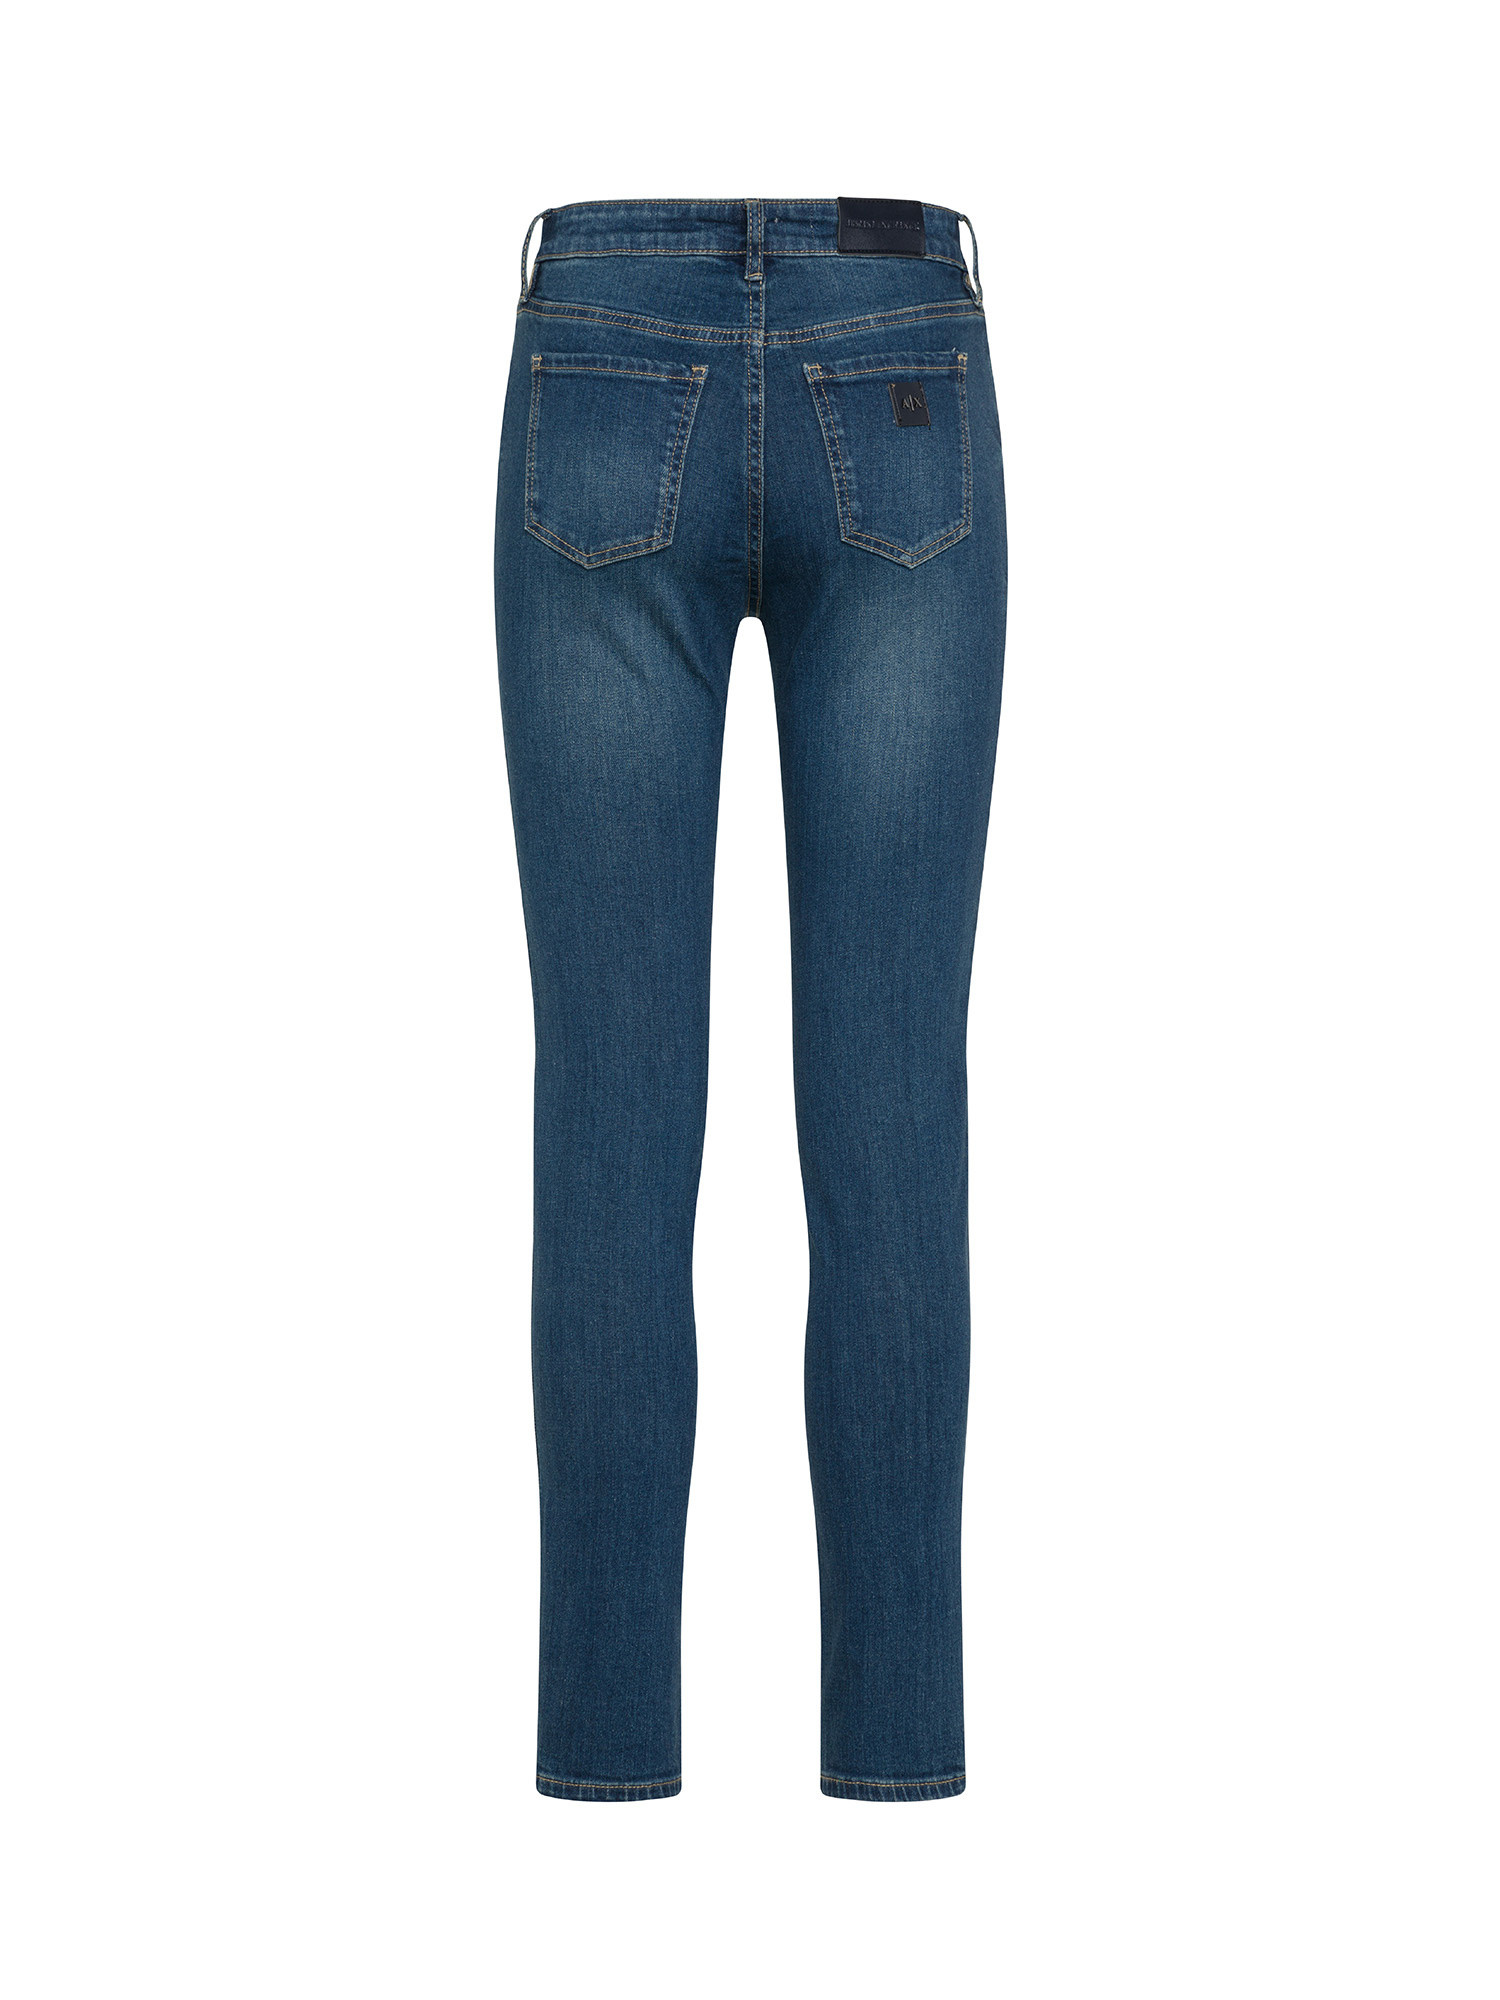 Armani Exchange - Jeans super skinny, Denim, large image number 1